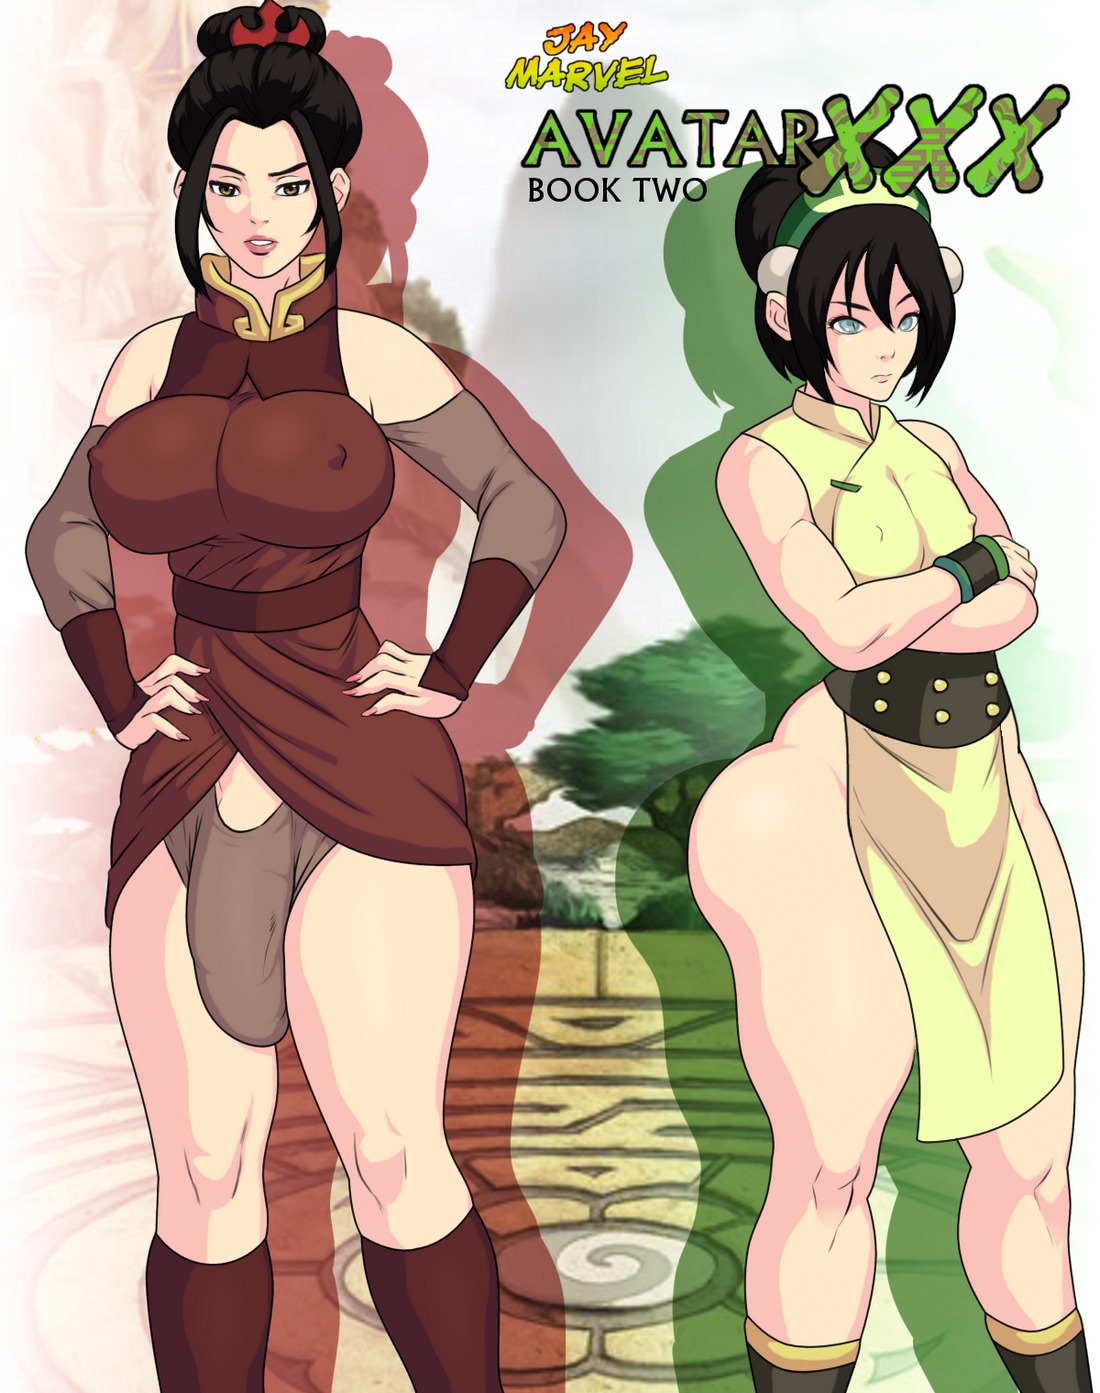 1100px x 1393px - Avatar XXX Book 2- Jay Marvel - Porn Cartoon Comics